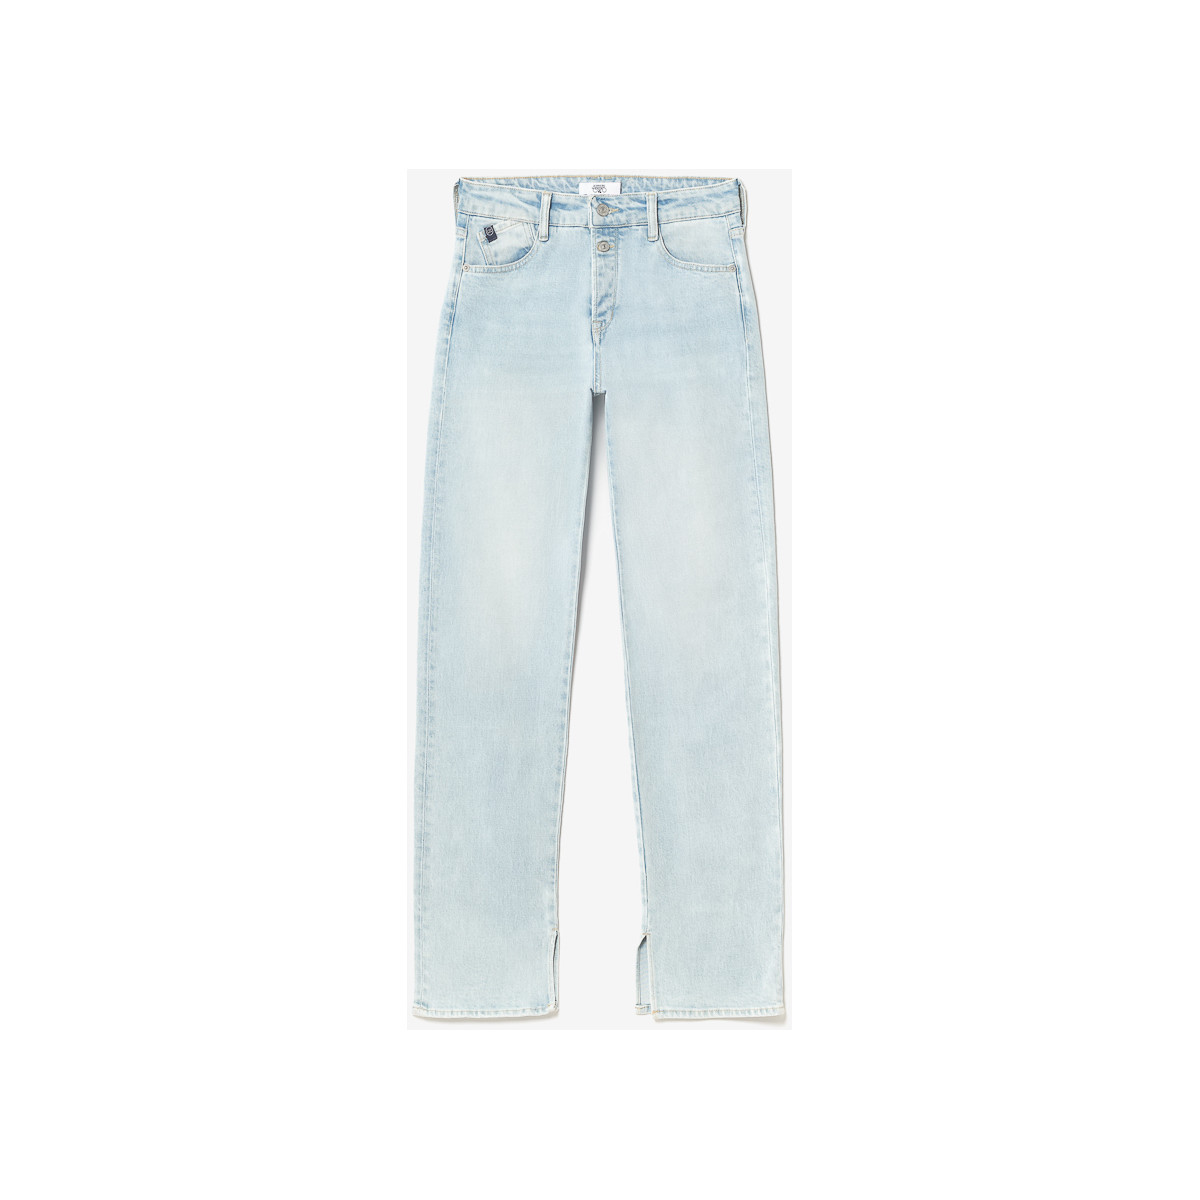 Le Temps des Cerises Bleu Lux 400/19 mom taille haute jeans bleu JBuW75bs